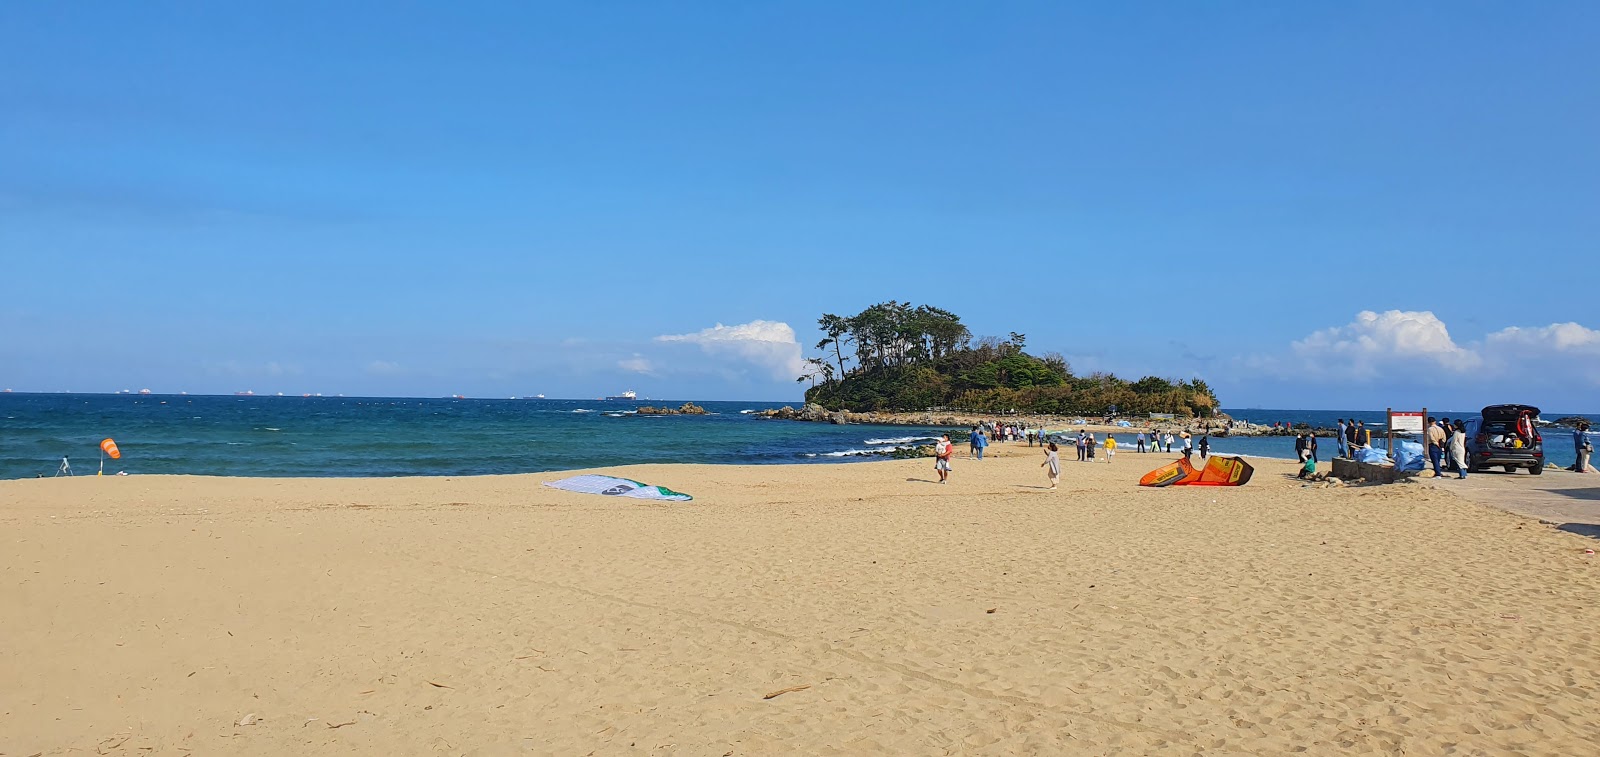 Jinha Beach的照片 具有非常干净级别的清洁度